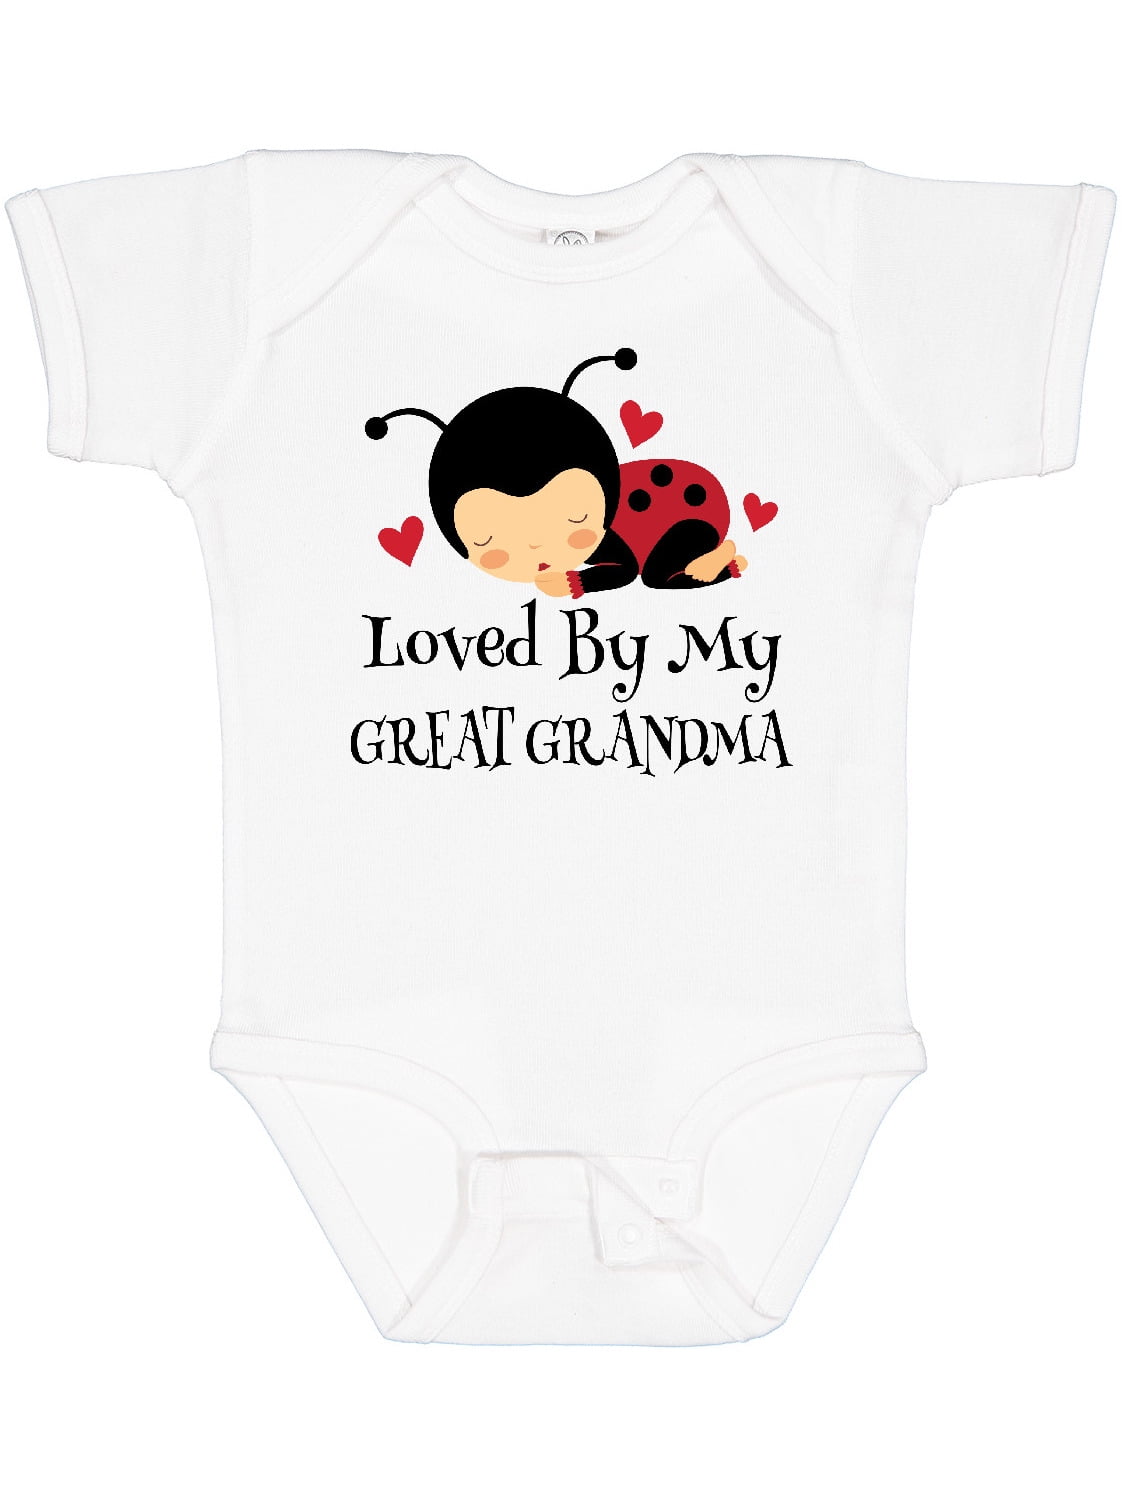 Grandma Loves Me Onesie\u00ae Grandma Reveal Grandma Baby Clothes Grandma Onesie\u00ae I Love Grandma Giraffe Onesie\u00ae Baby Shower Gift